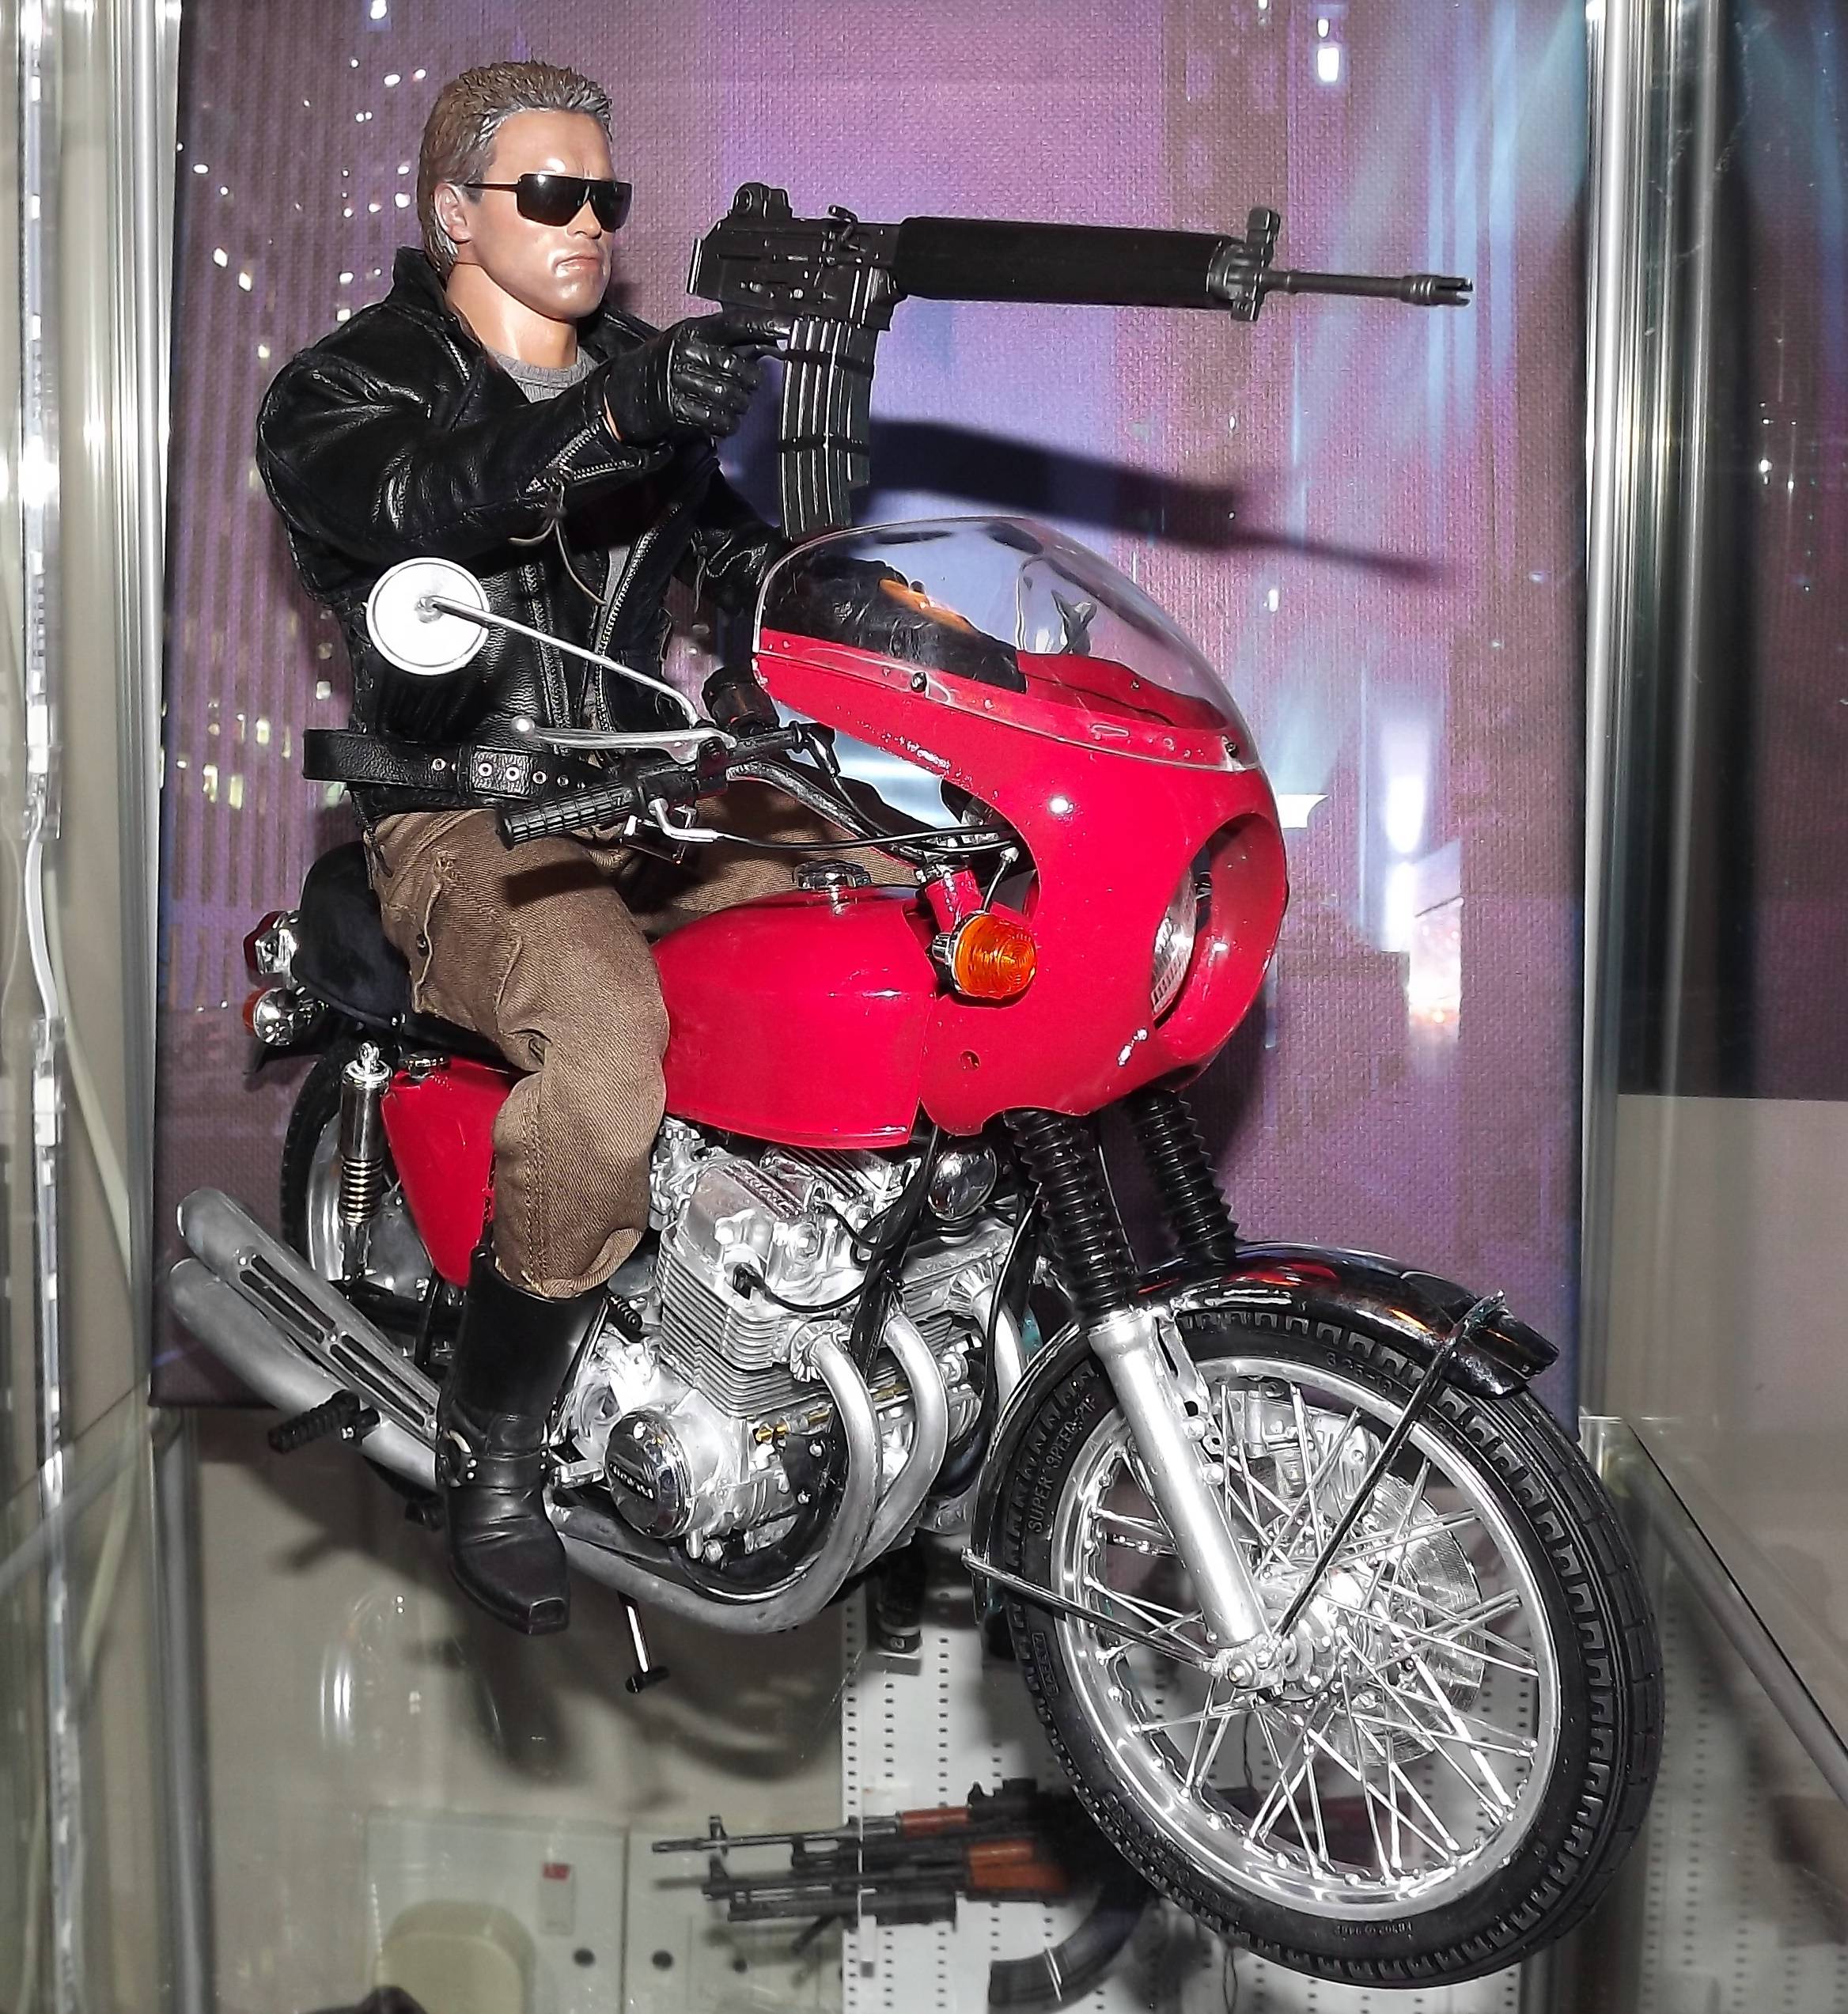 Honda CB750 fyra modell leksak från den första Terminator film